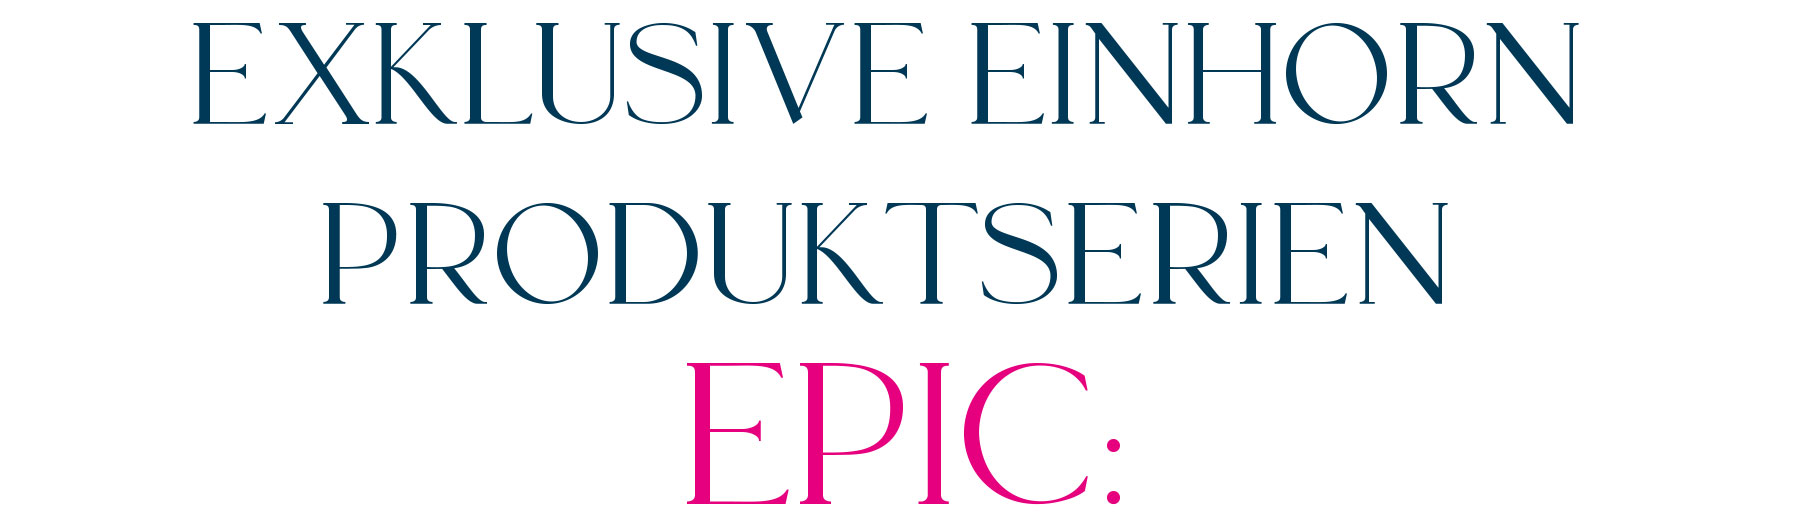 exklusive Einhorn Produktserien und Artikel EPIC